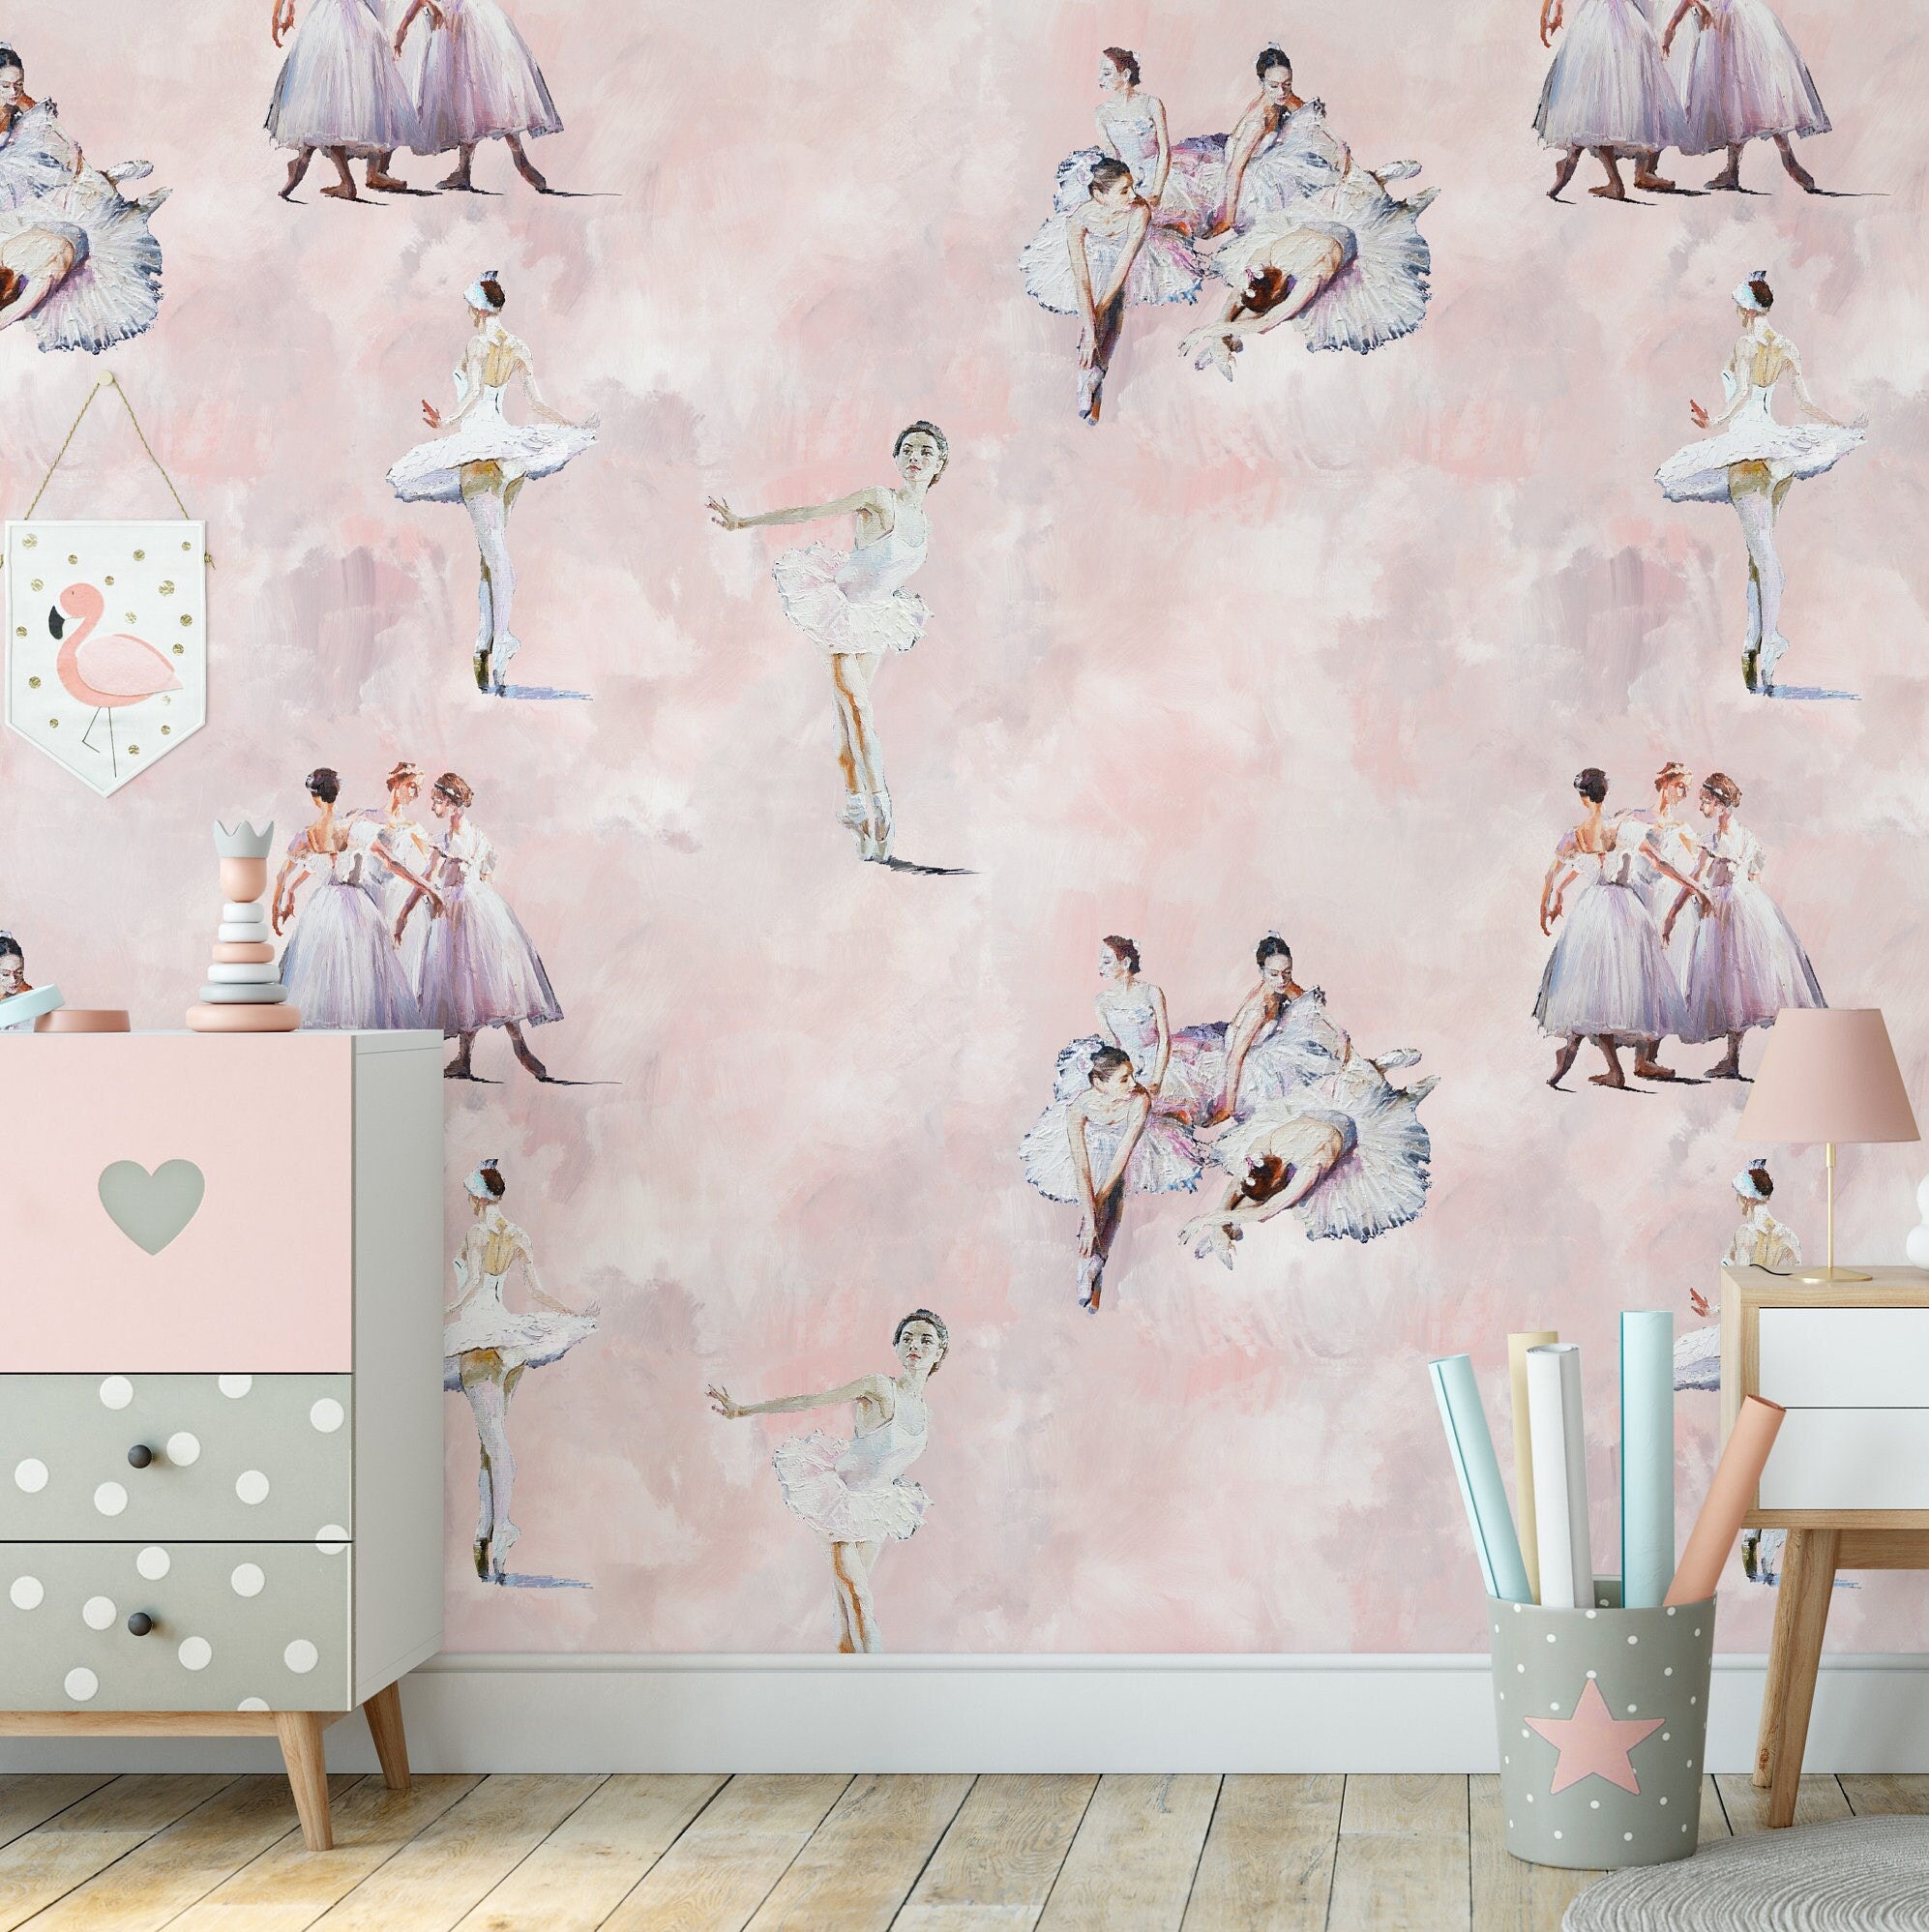 Ballerina Wallpaper Vector Images over 620